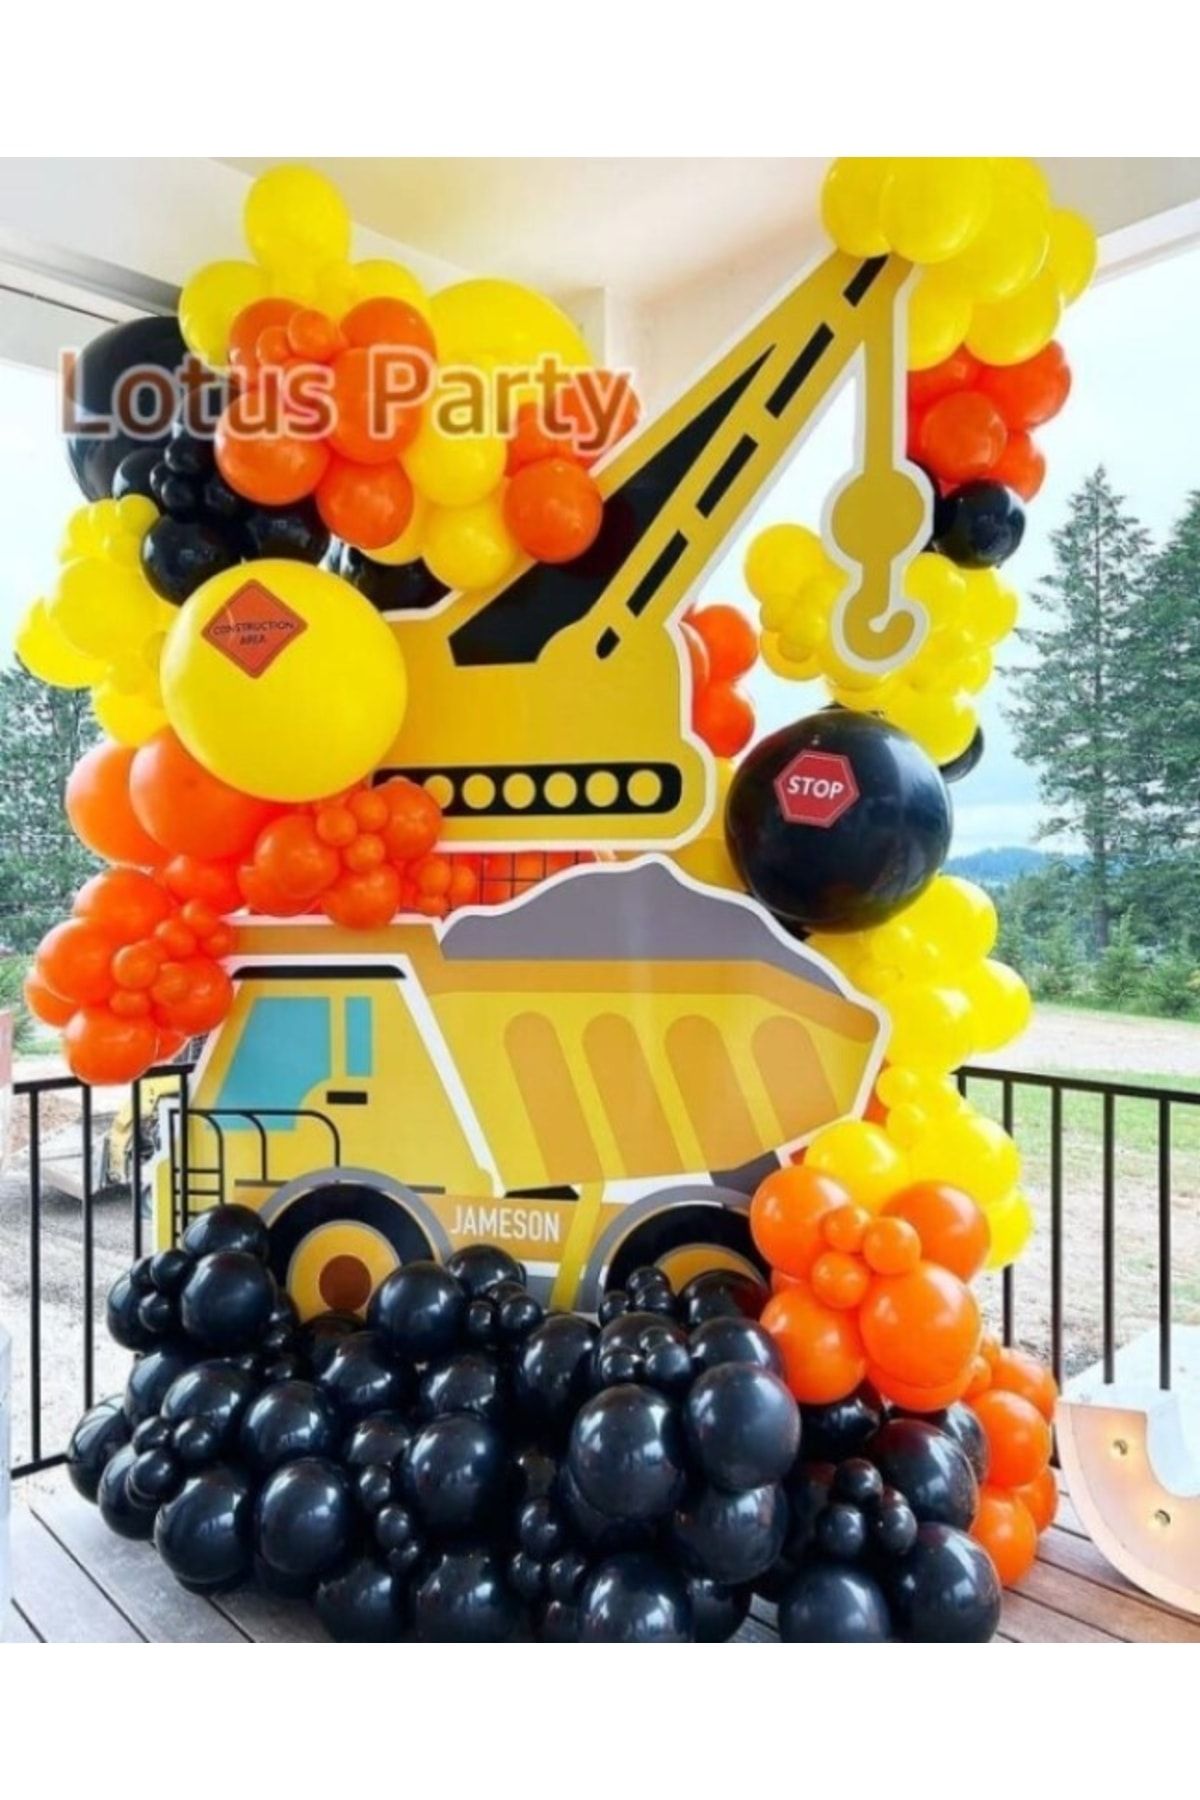 LOTUS PARTY 80 Adet Inşaat Temalı Balon Zinciri Seti ( Turuncu - Sarı - Siyah Balon )